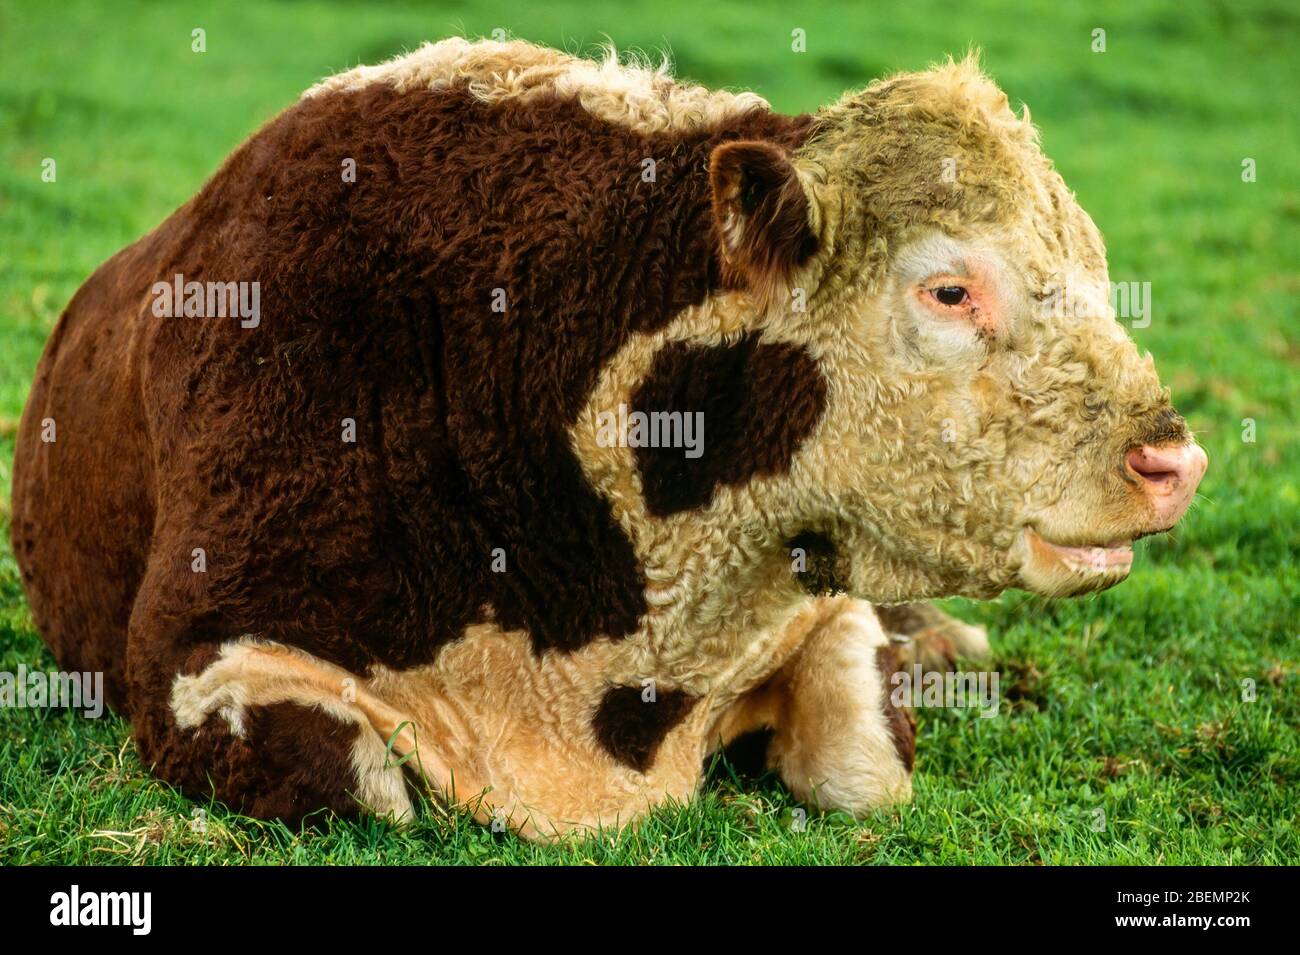 Gros plan d'un gros taureau brun et blanc Hereford allongé dans le domaine de l'herbe verte, Angleterre, Royaume-Uni Banque D'Images